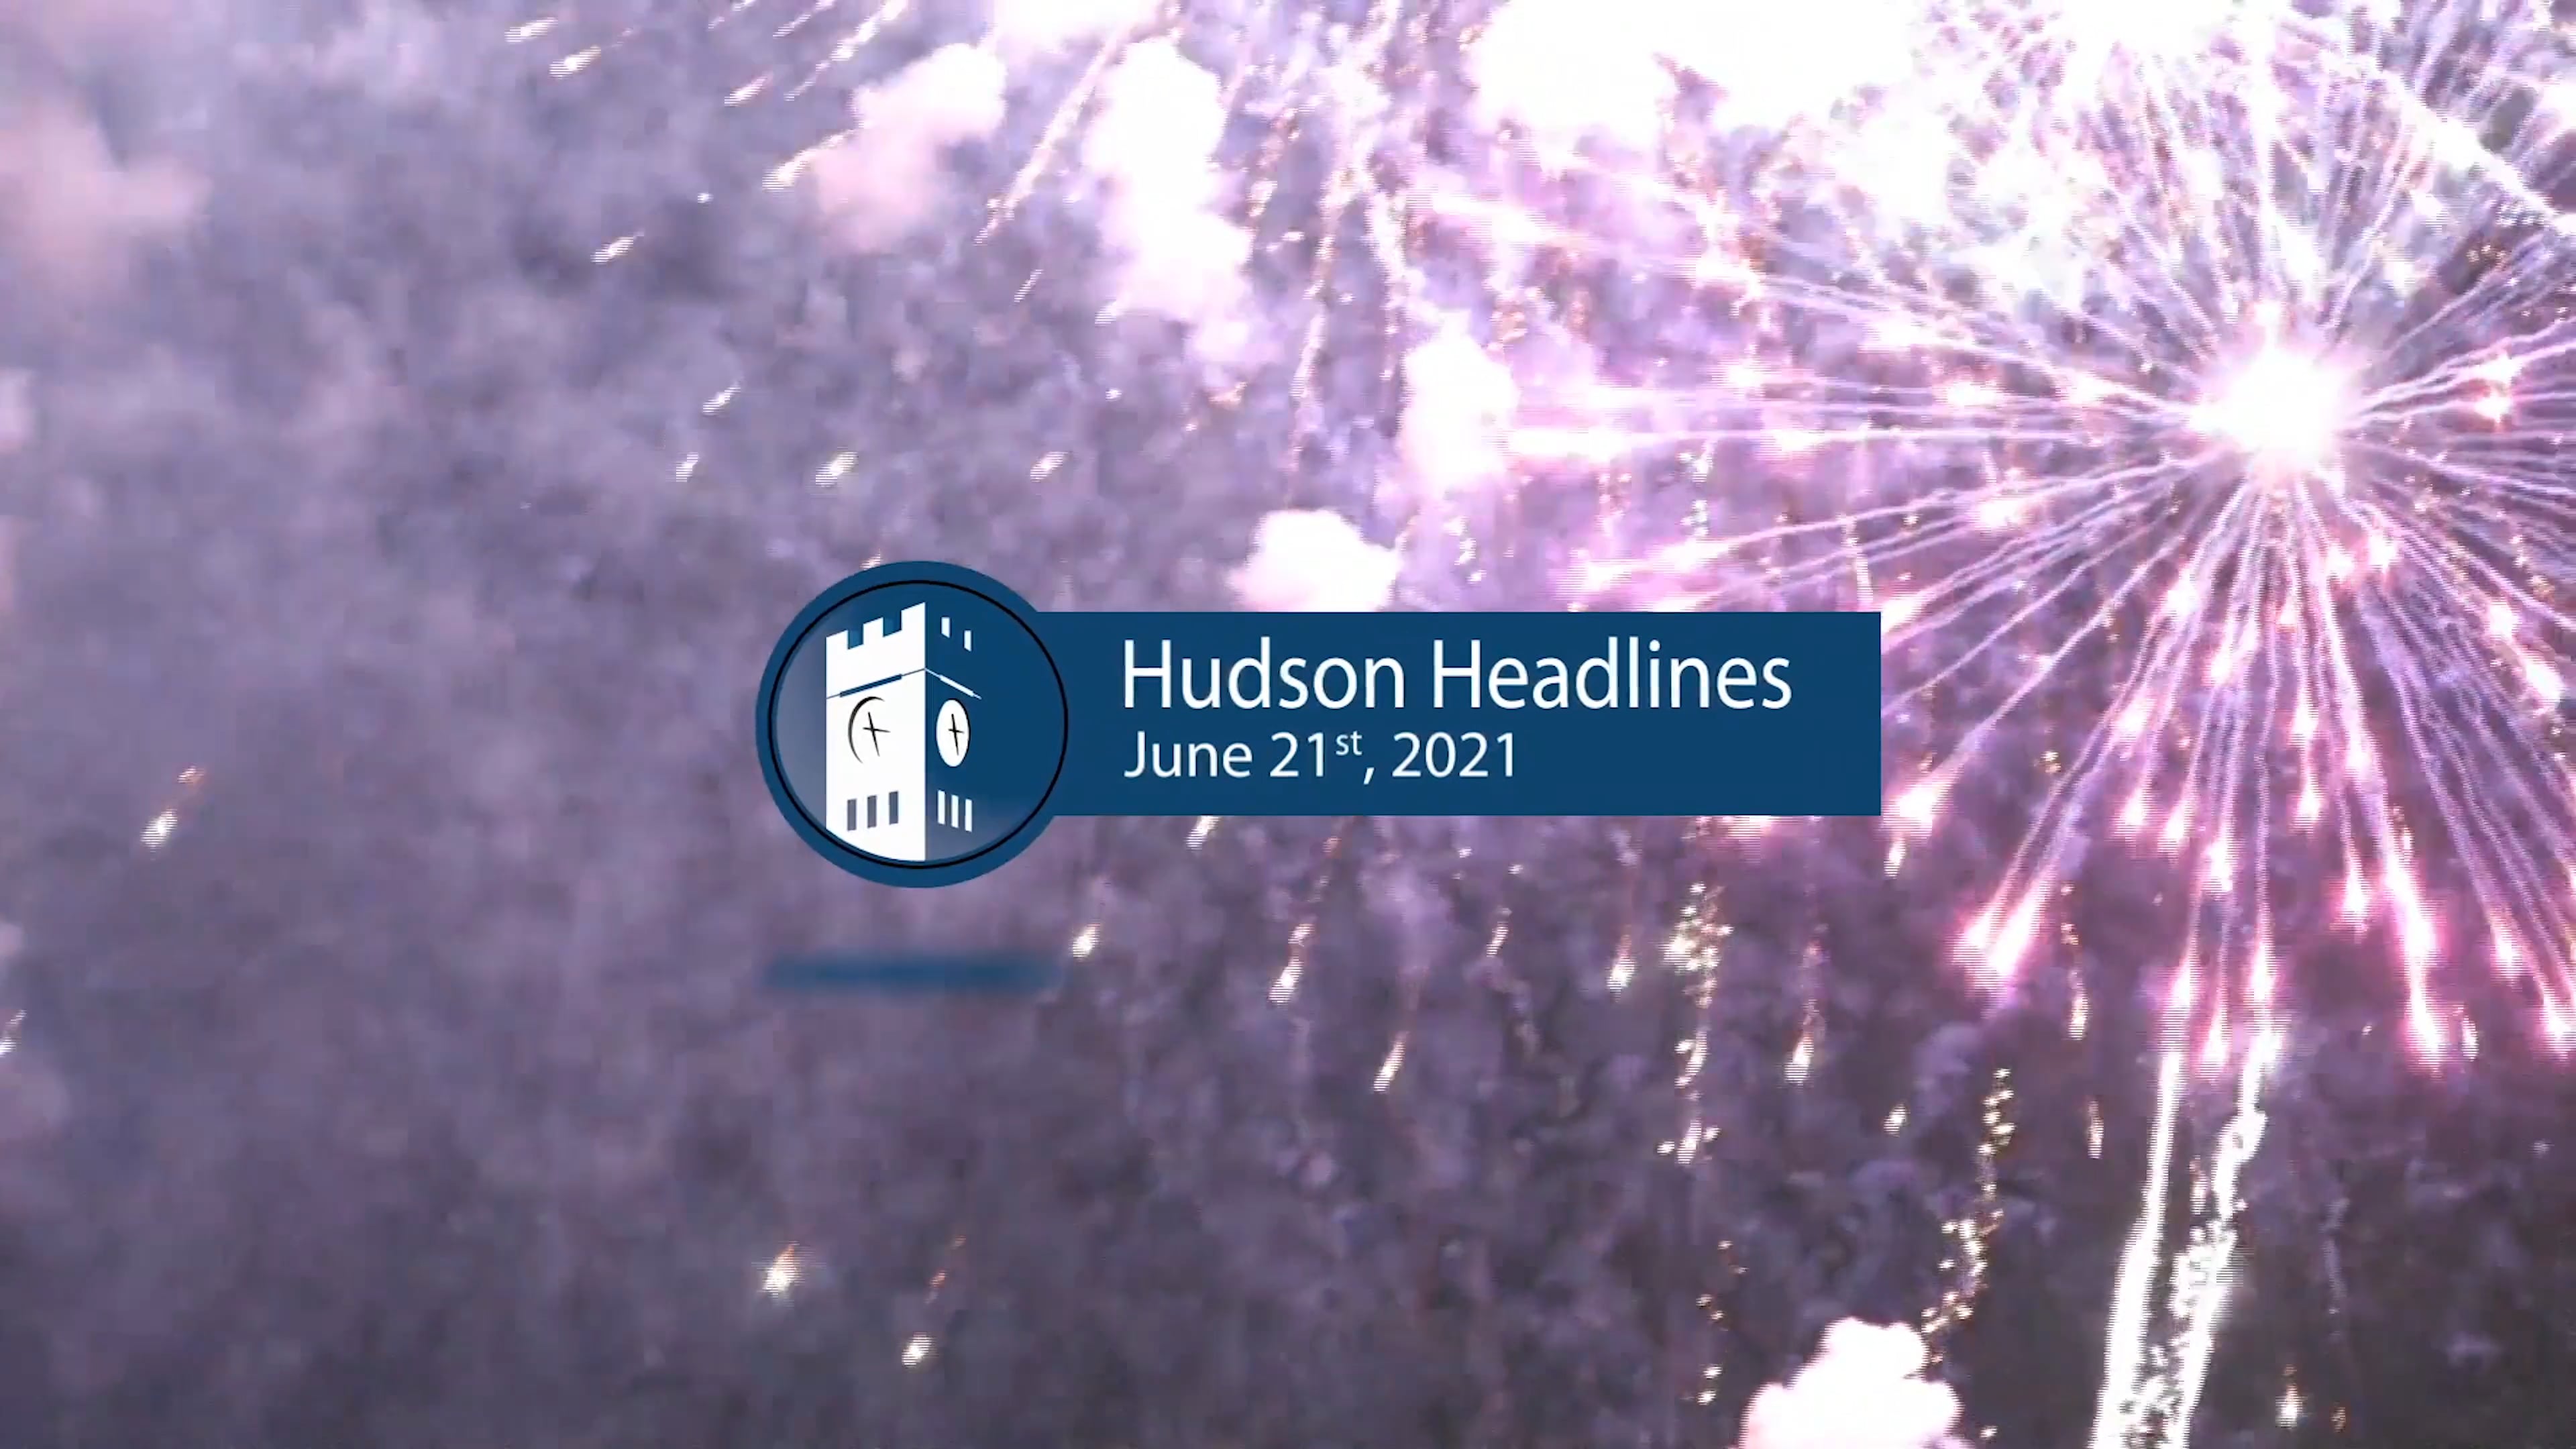 Hudson Headlines - 2021 Independence Day Fireworks Celebration